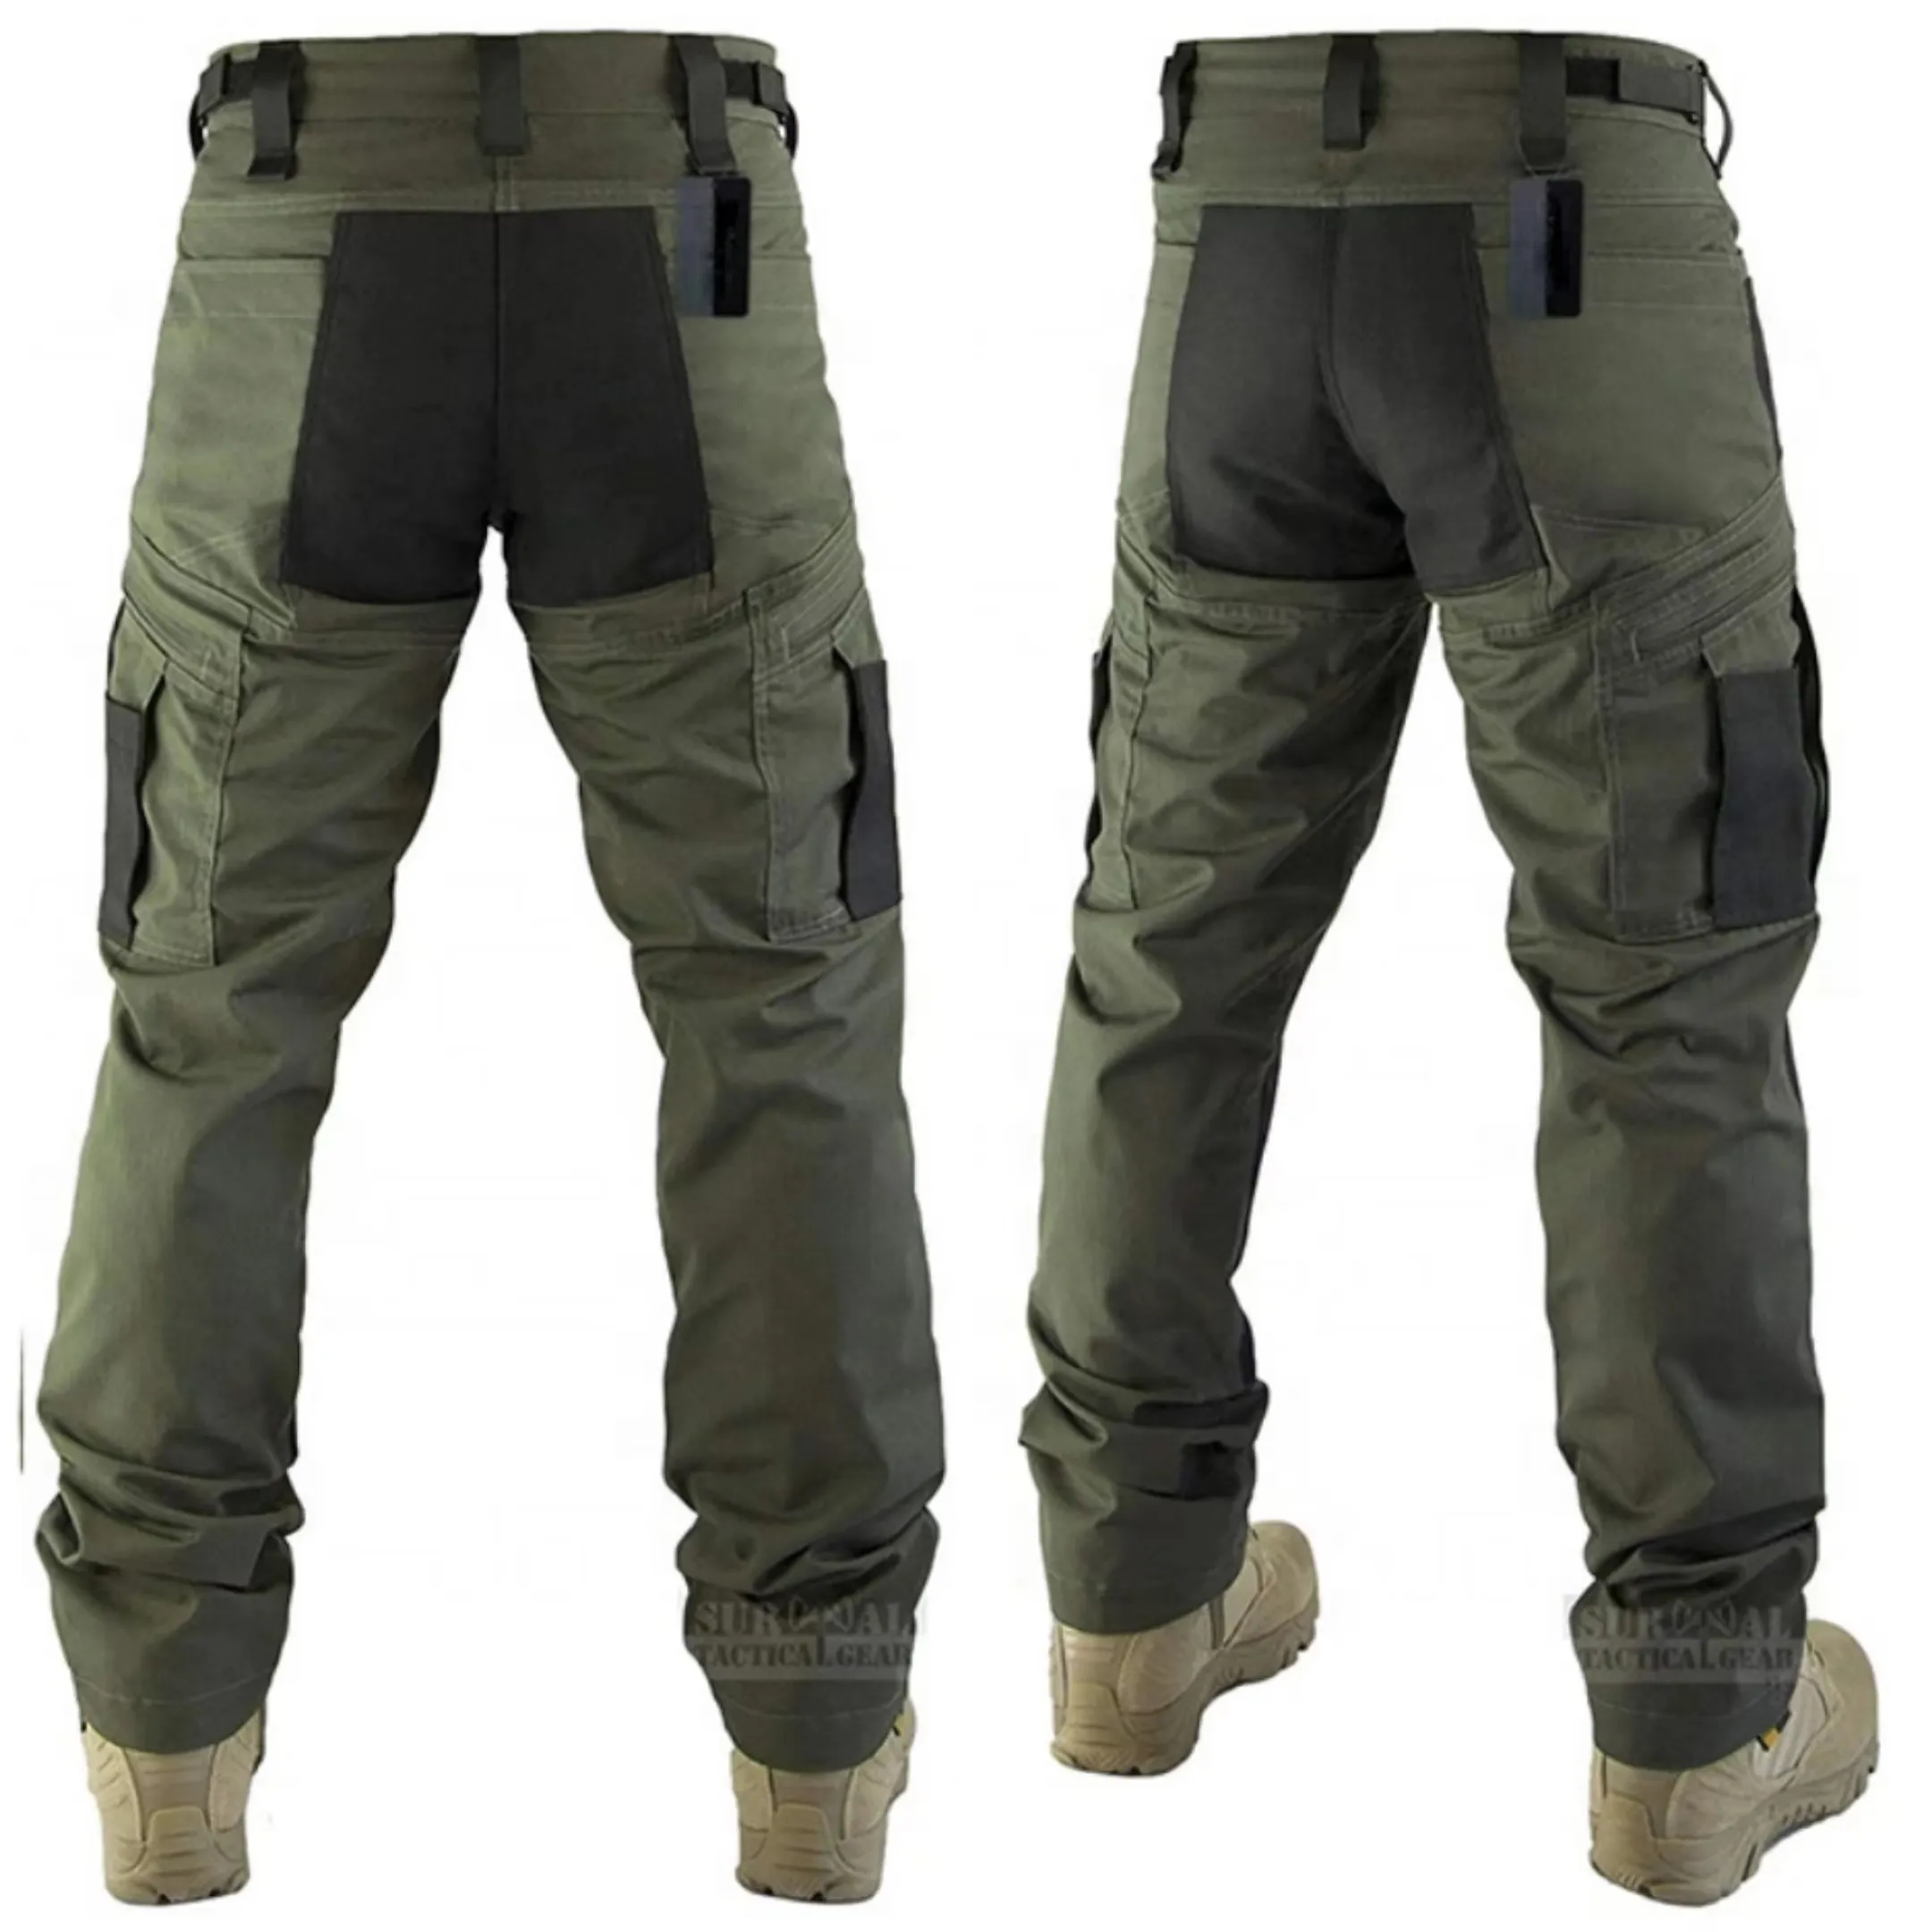 Pantalones tácticos de carga impermeables para hombre, pantalón de trabajo ligero y transpirable, para exteriores, senderismo, caza, talla grande